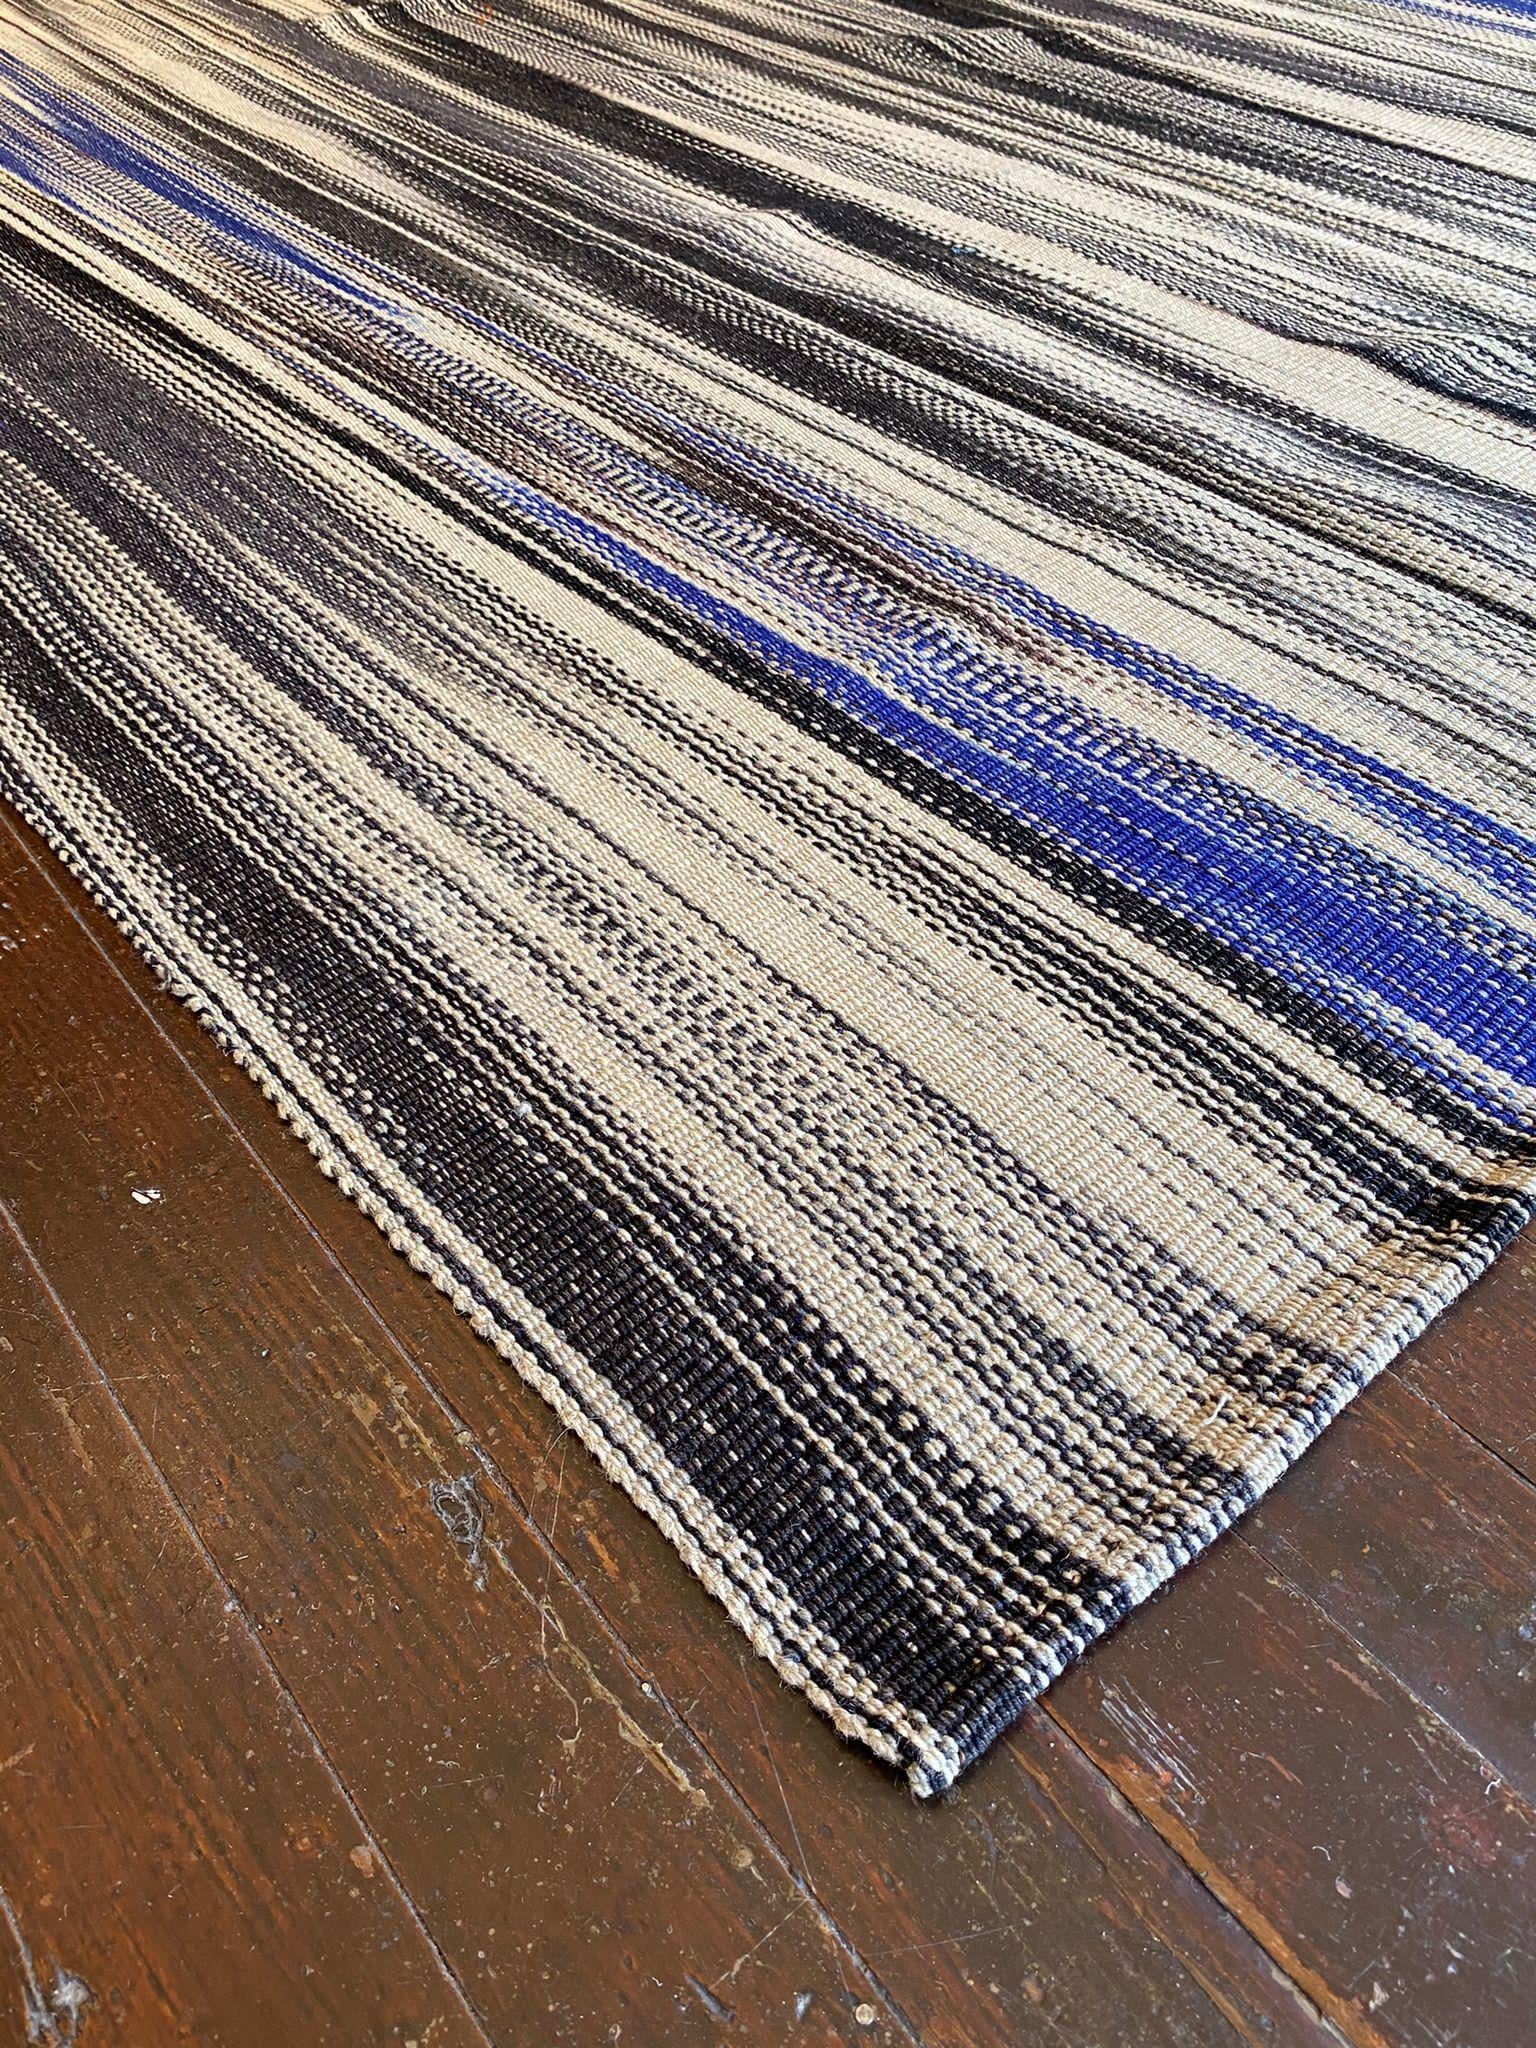 Les tapis Vintage Fars Kelim sont réputés pour leurs designs complexes, leur artisanat exquis et leurs couleurs éclatantes. Le mirage des teintes bleues, beiges, grises et noires utilisées dans ces tapis crée un festin visuel pour les yeux, captant